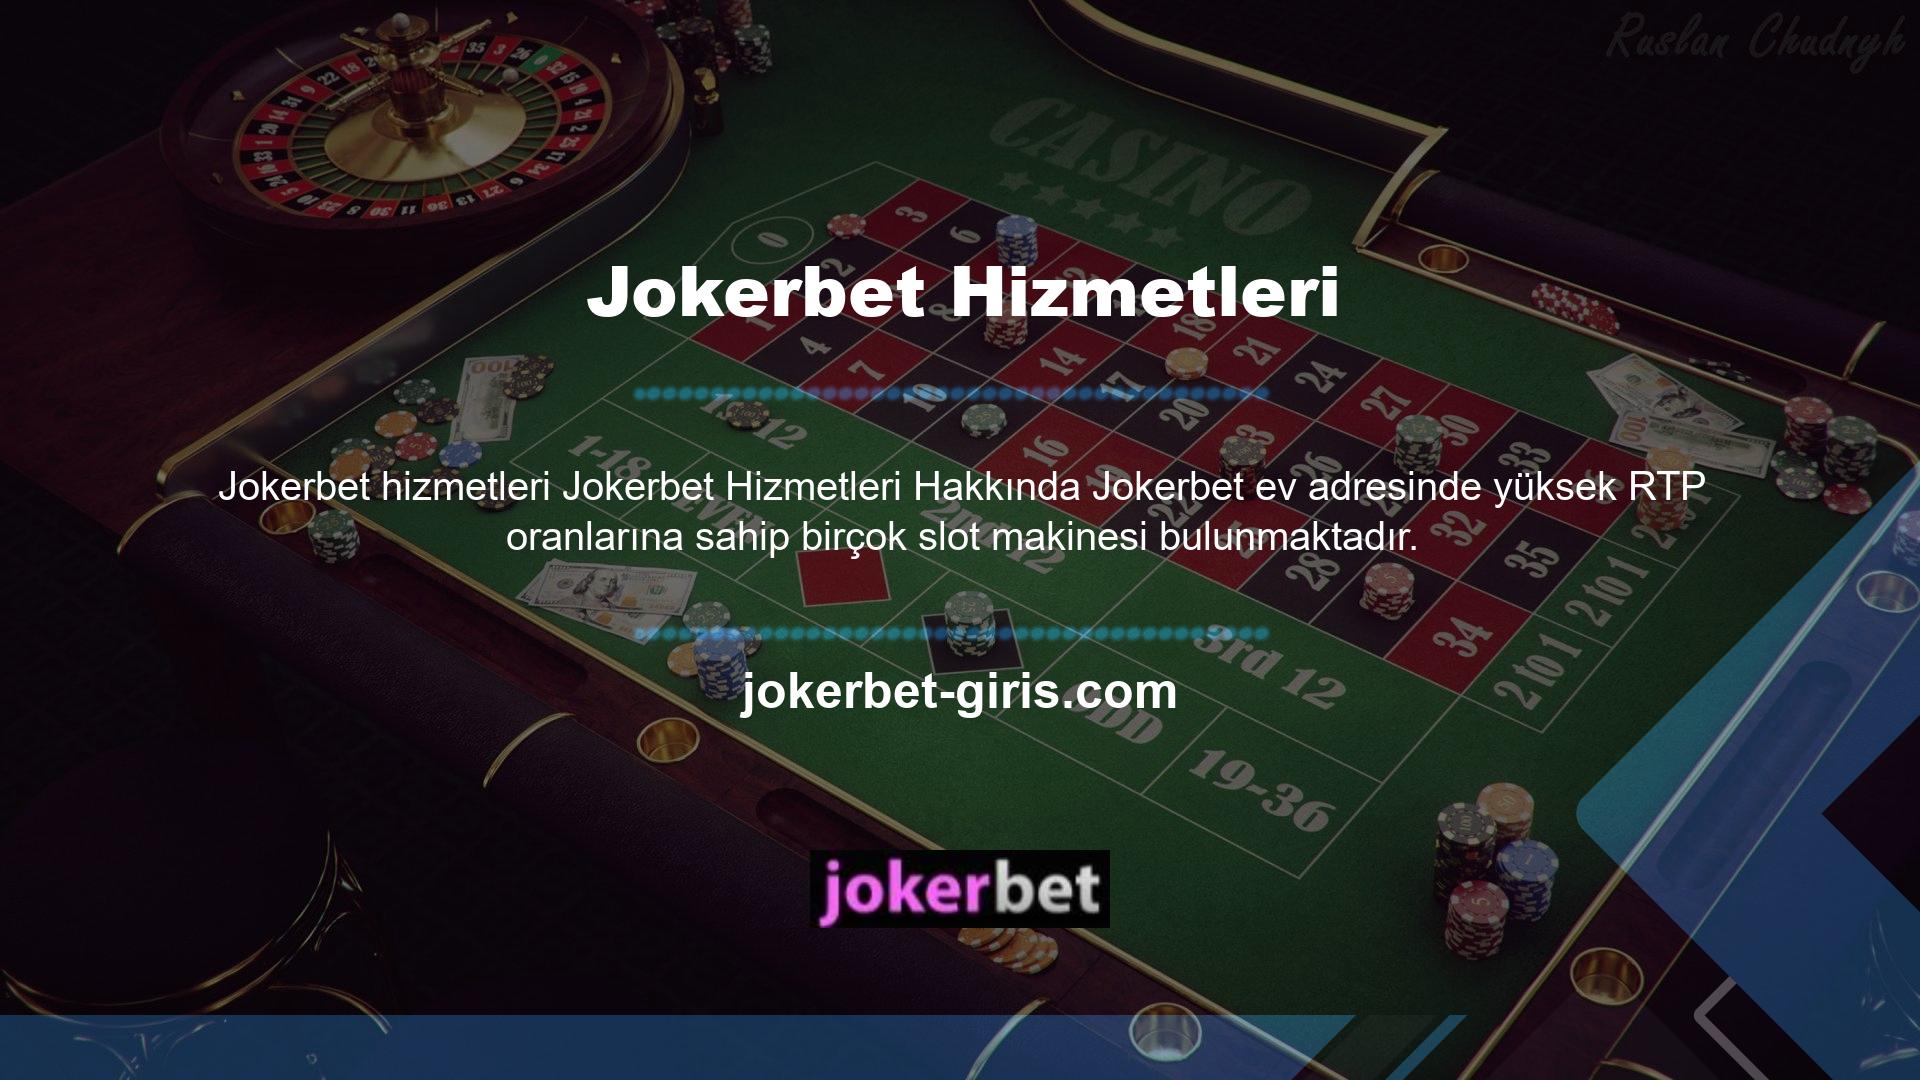 Jokerbet web sitesi her bütçeden oyuncuya hitap edecek geniş bir yelpazede canlı casino masaları sunmaktadır